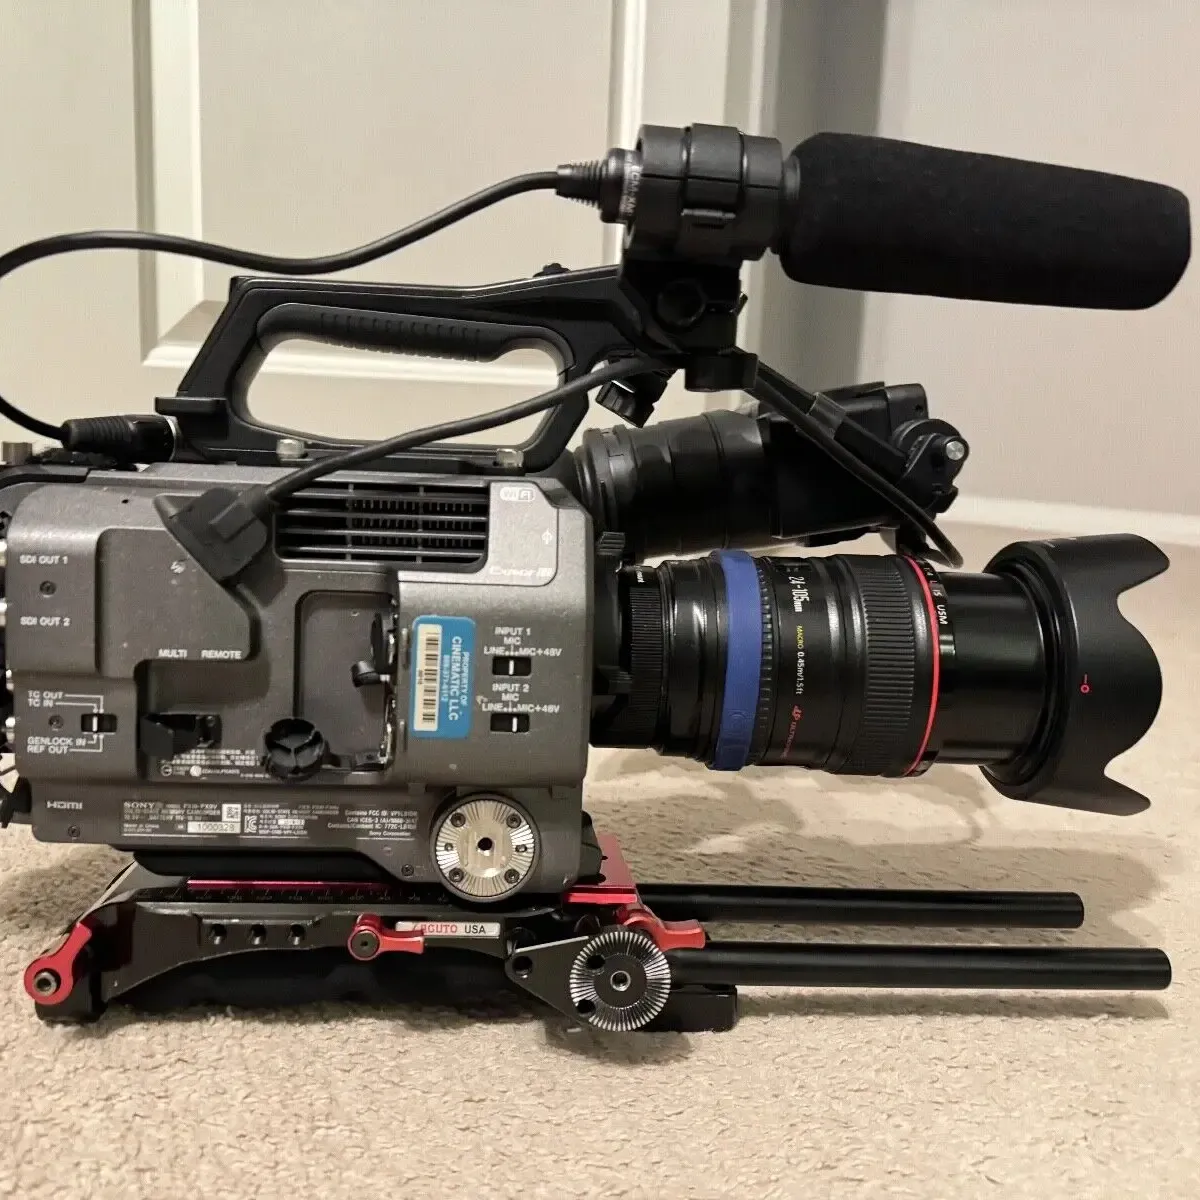 Tout nouveau caméscope d'origine PXW-FX9 XDCAM 6K système de caméra plein cadre et 2 objectifs